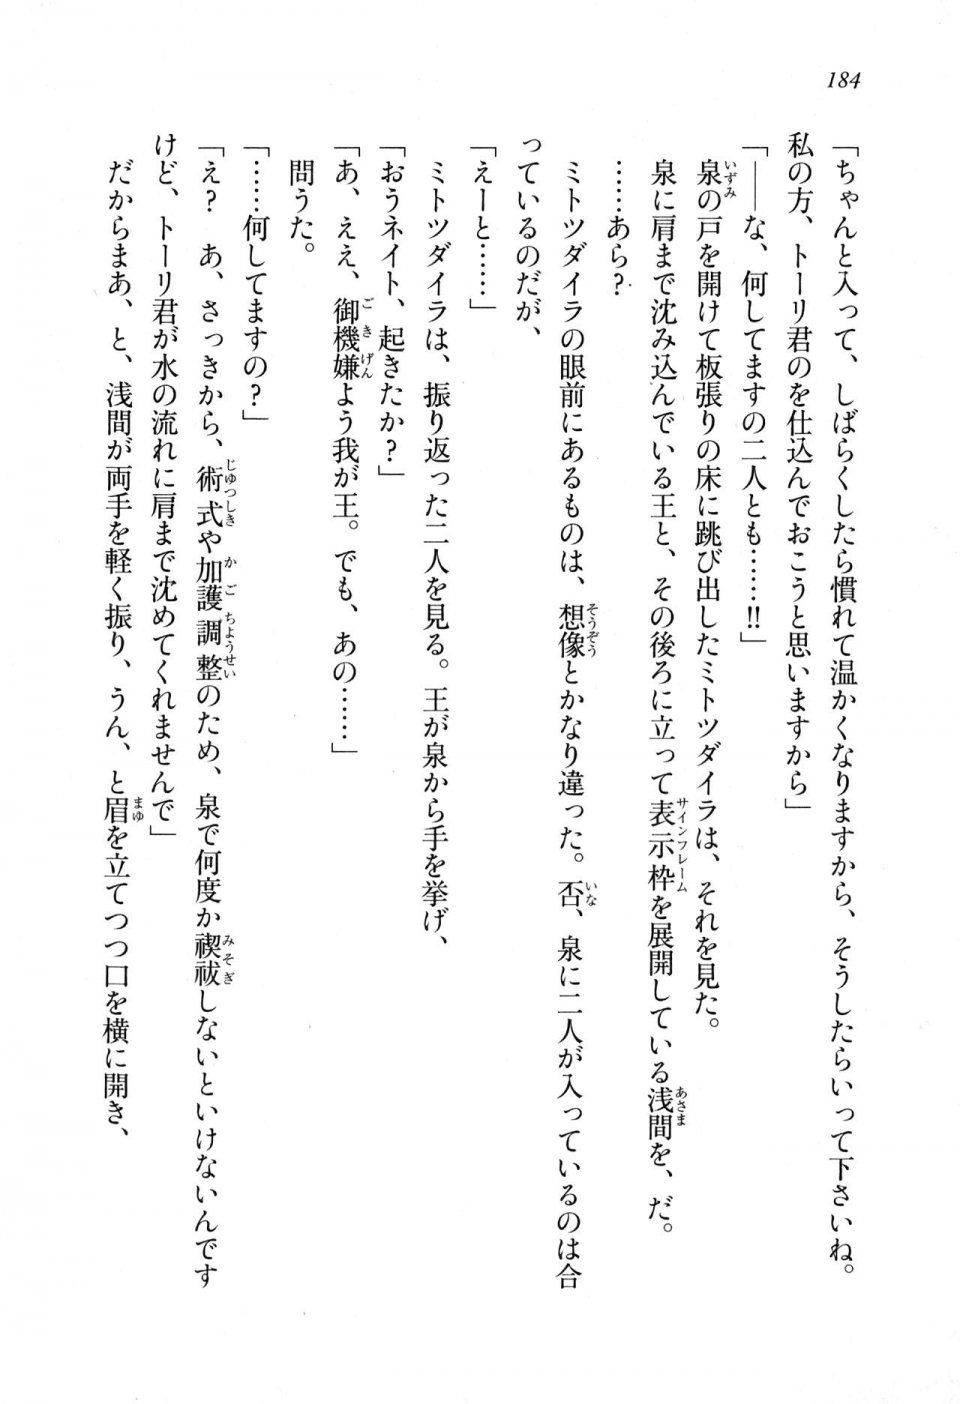 Kyoukai Senjou no Horizon LN Sidestory Vol 1 - Photo #182